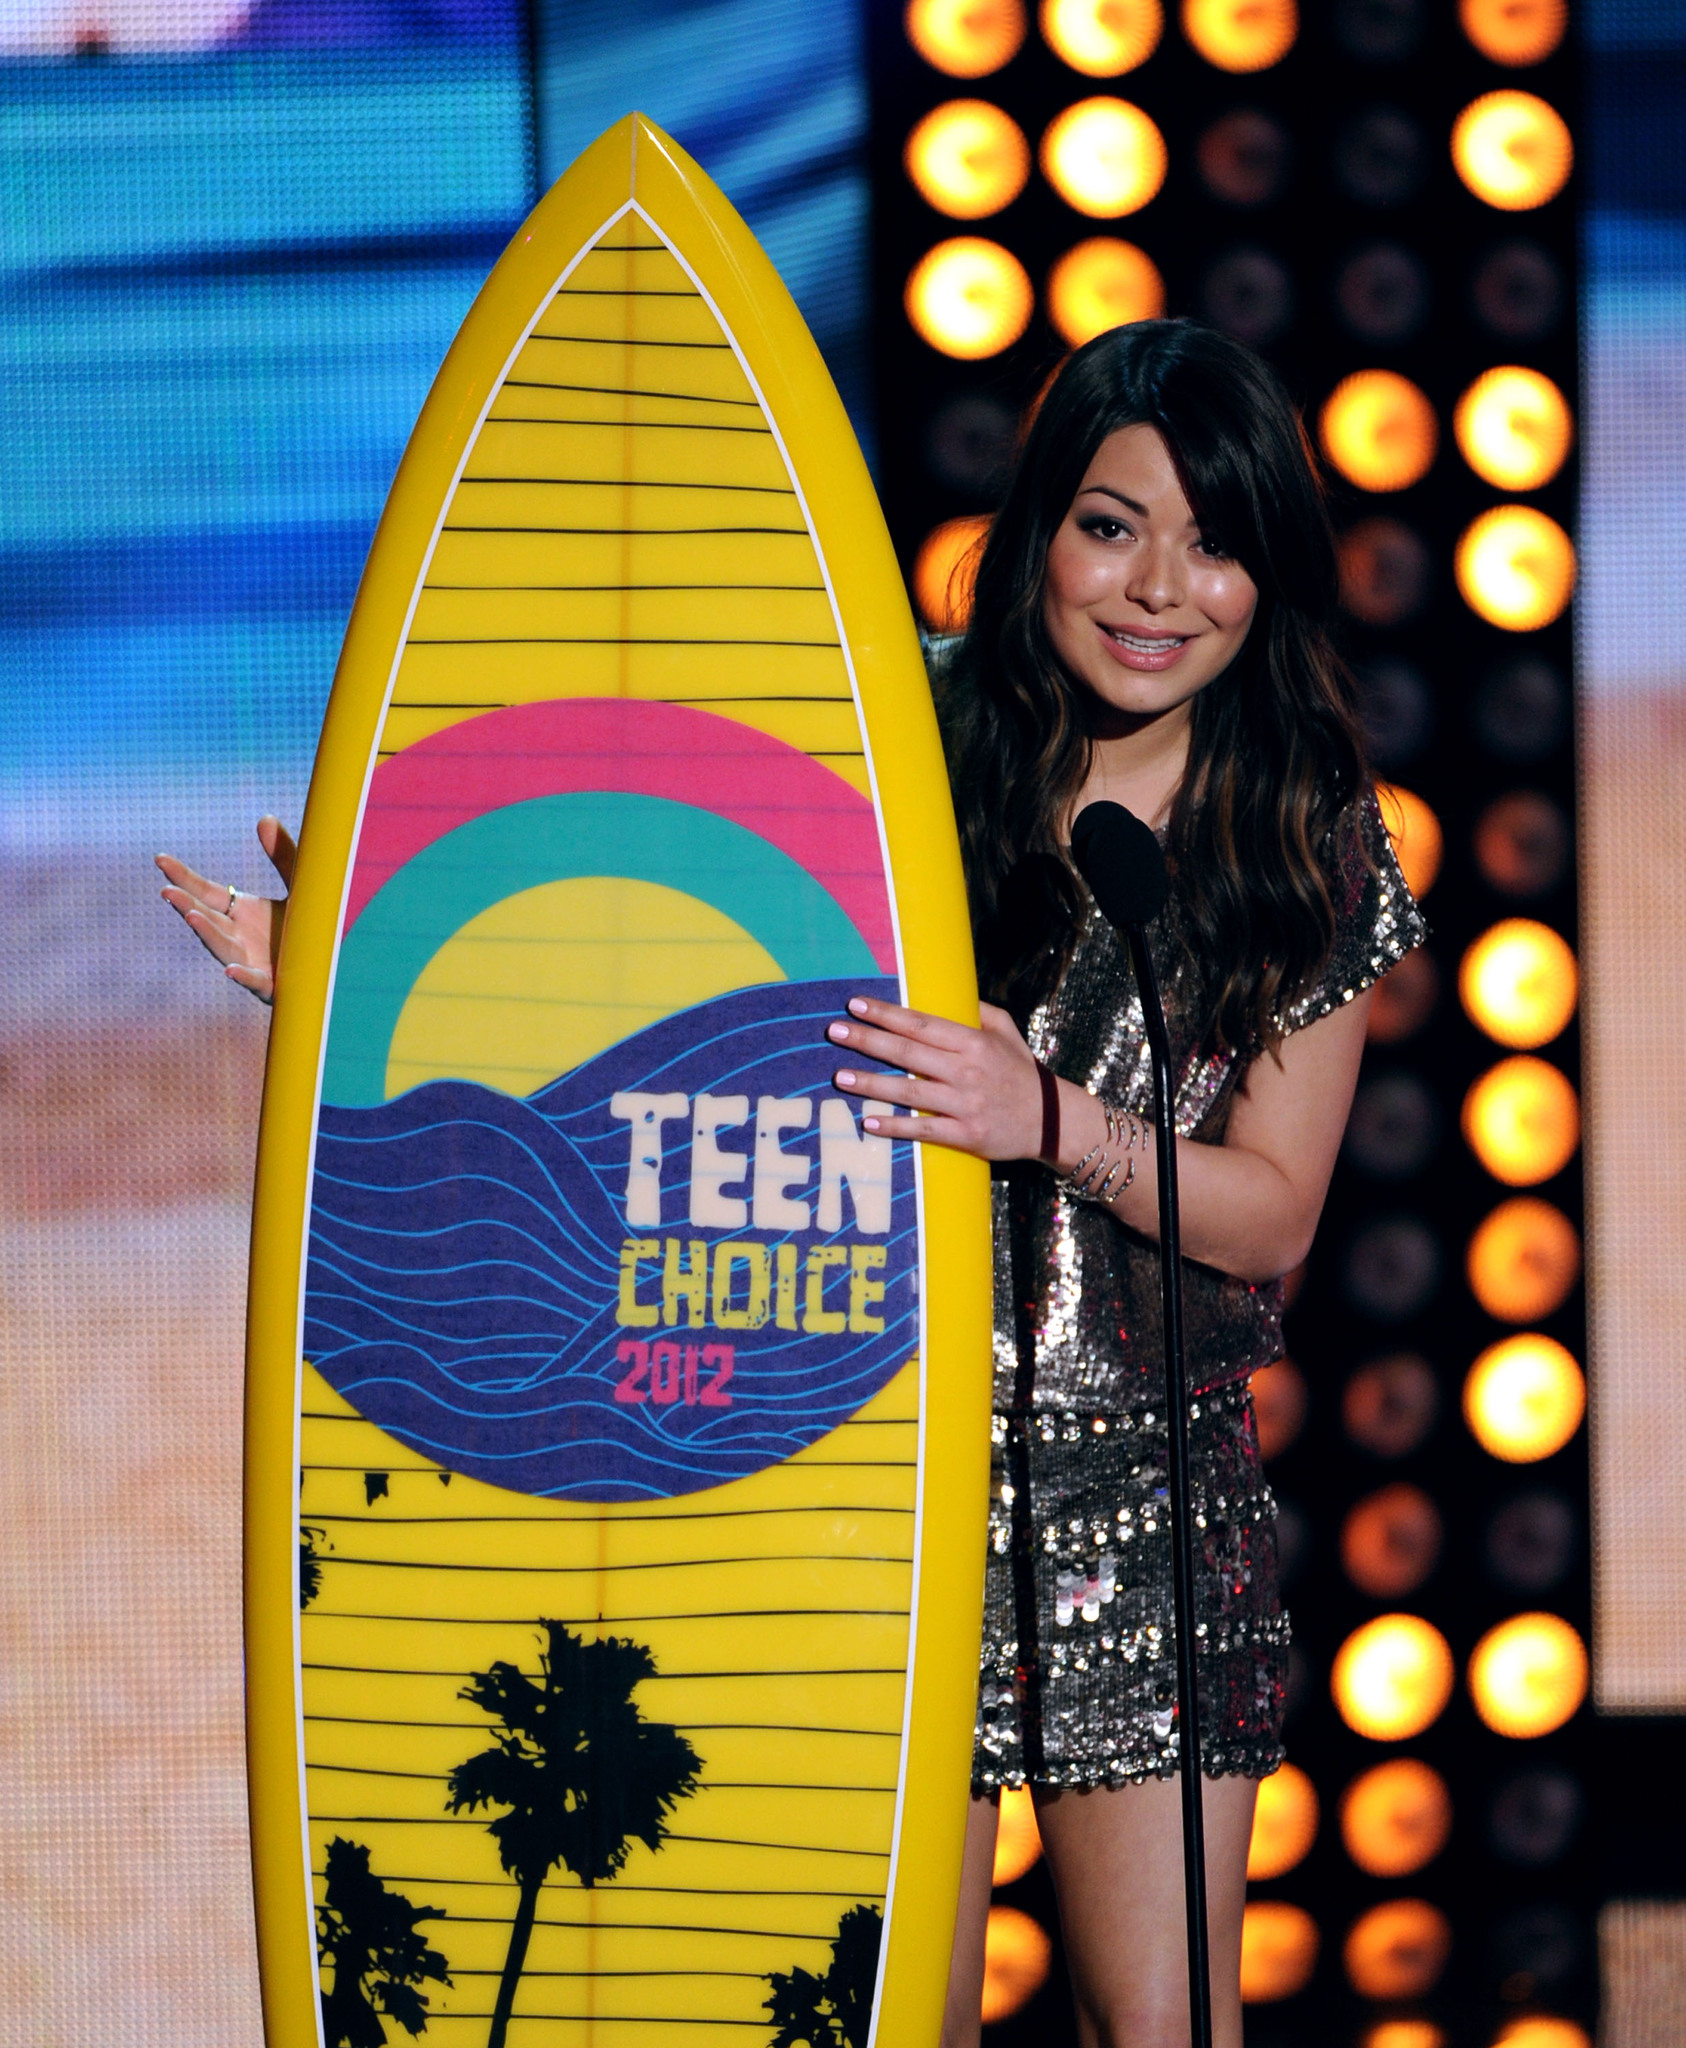 Miranda Cosgrove at event of Teen Choice Awards 2012 (2012)